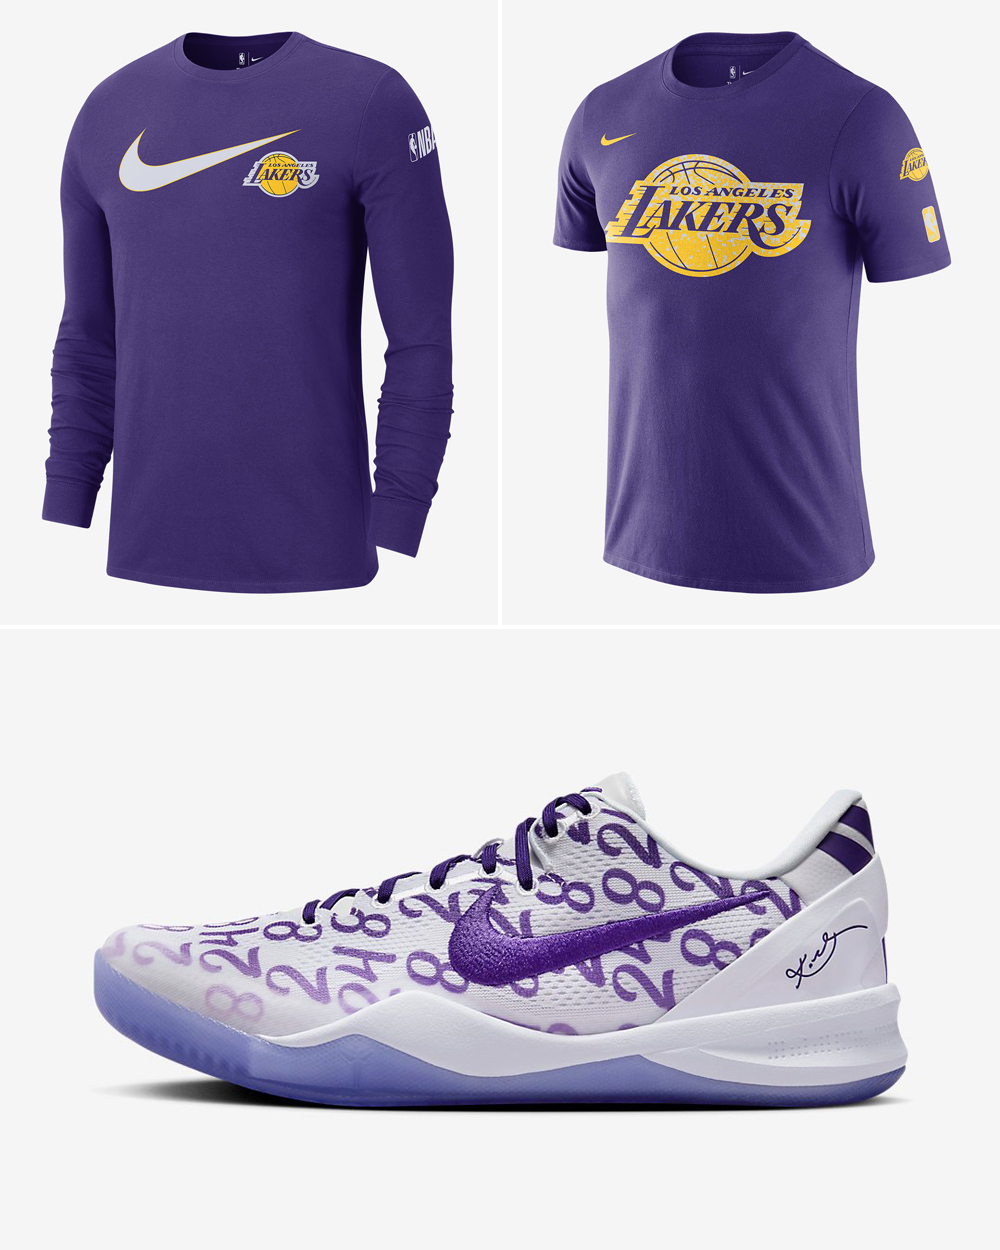 Nike Kobe 8 Protro Court Purple Lakers Shirts